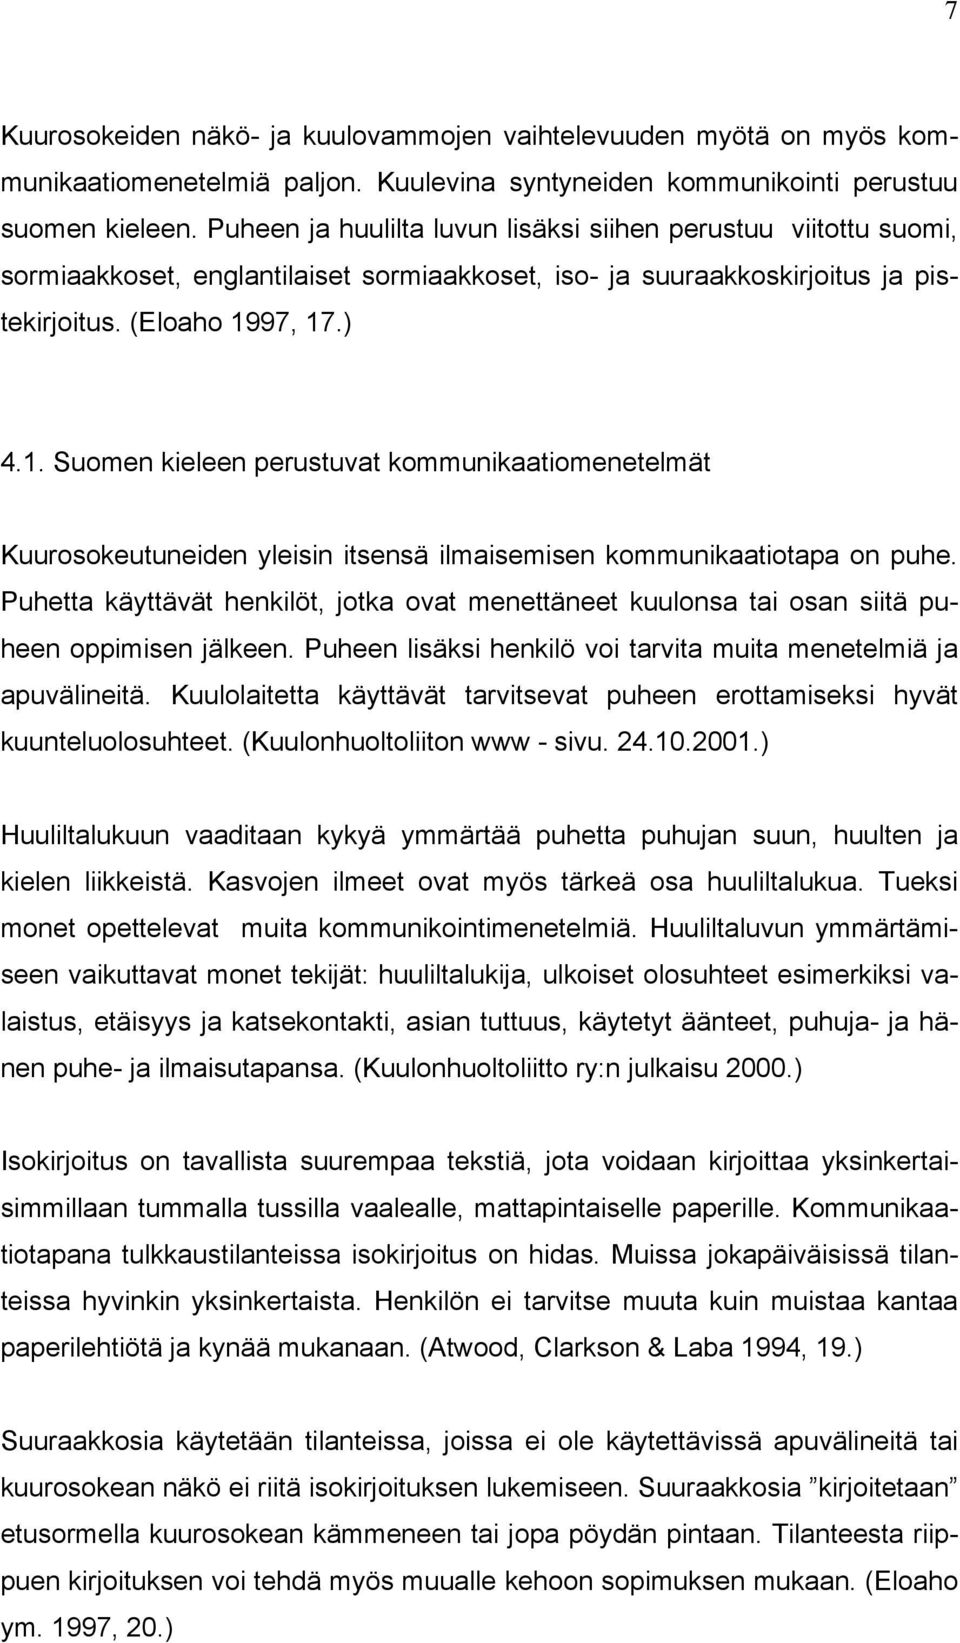 97, 17.) 4.1. Suomen kieleen perustuvat kommunikaatiomenetelmät Kuurosokeutuneiden yleisin itsensä ilmaisemisen kommunikaatiotapa on puhe.